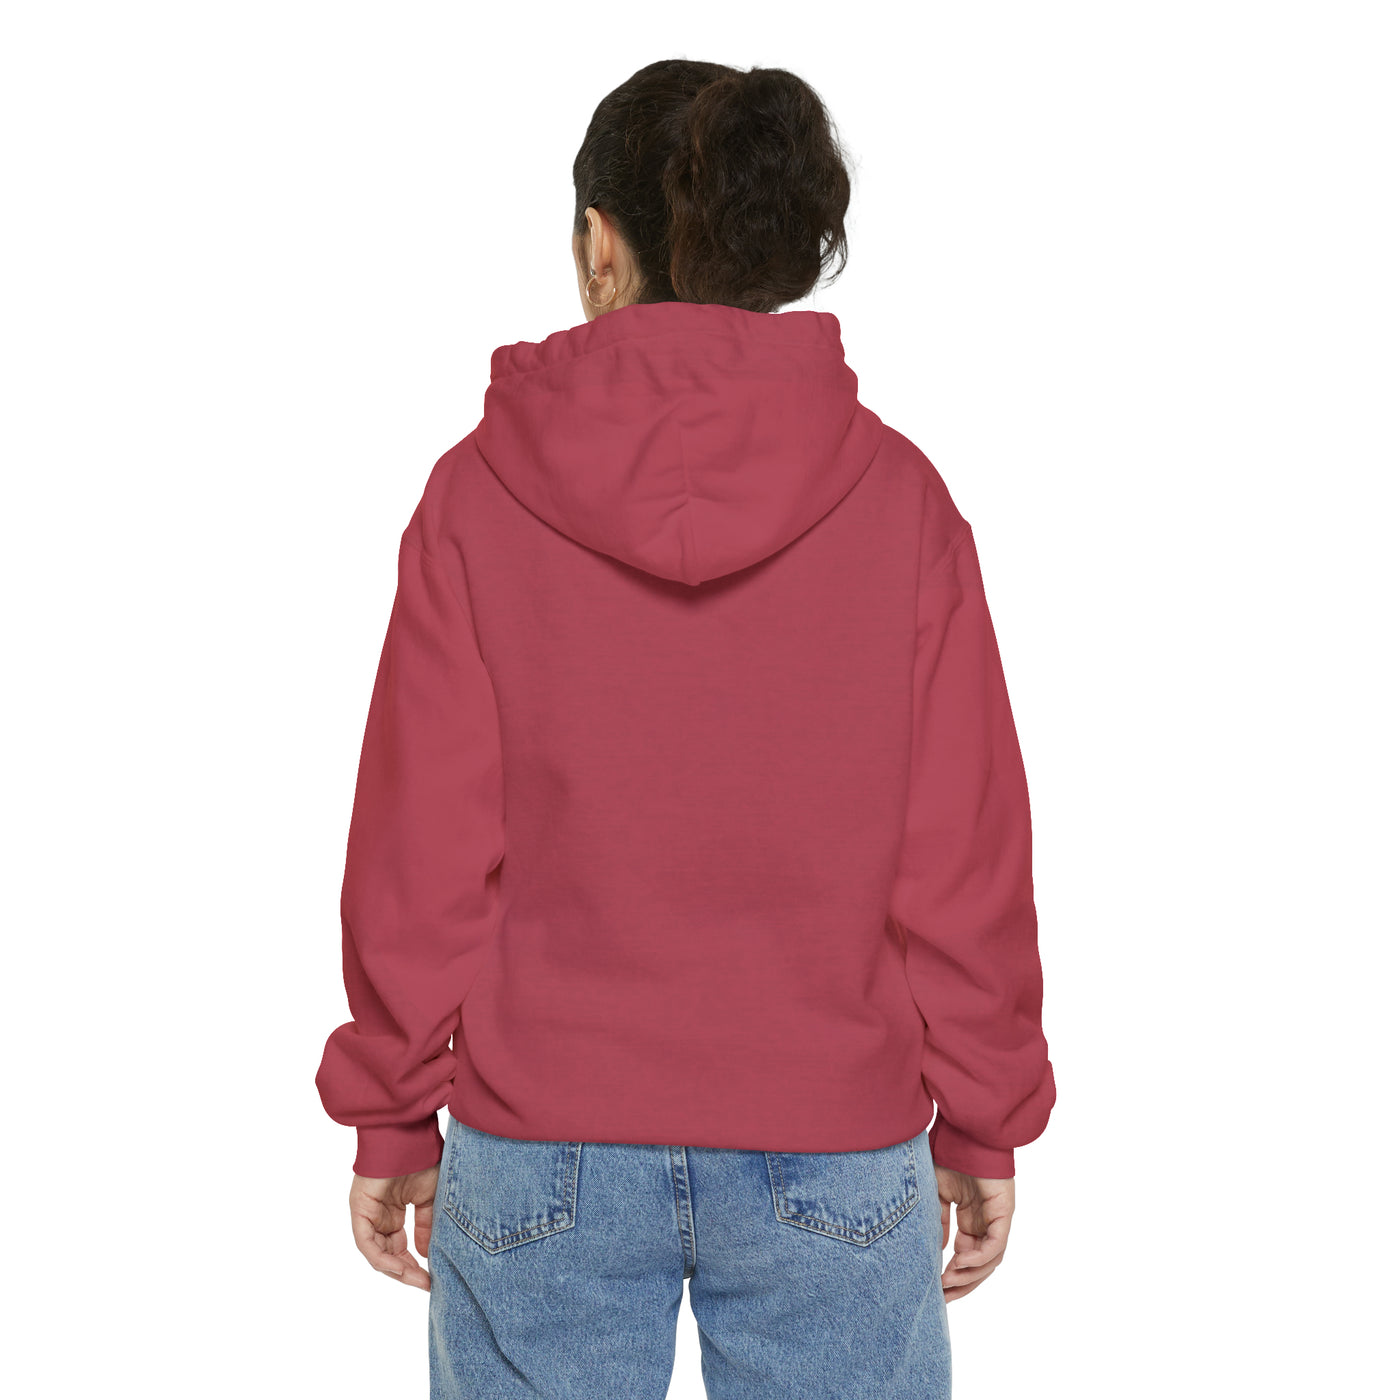 Unisex Garment-Dyed Hoodie - Multicolored Hoodie